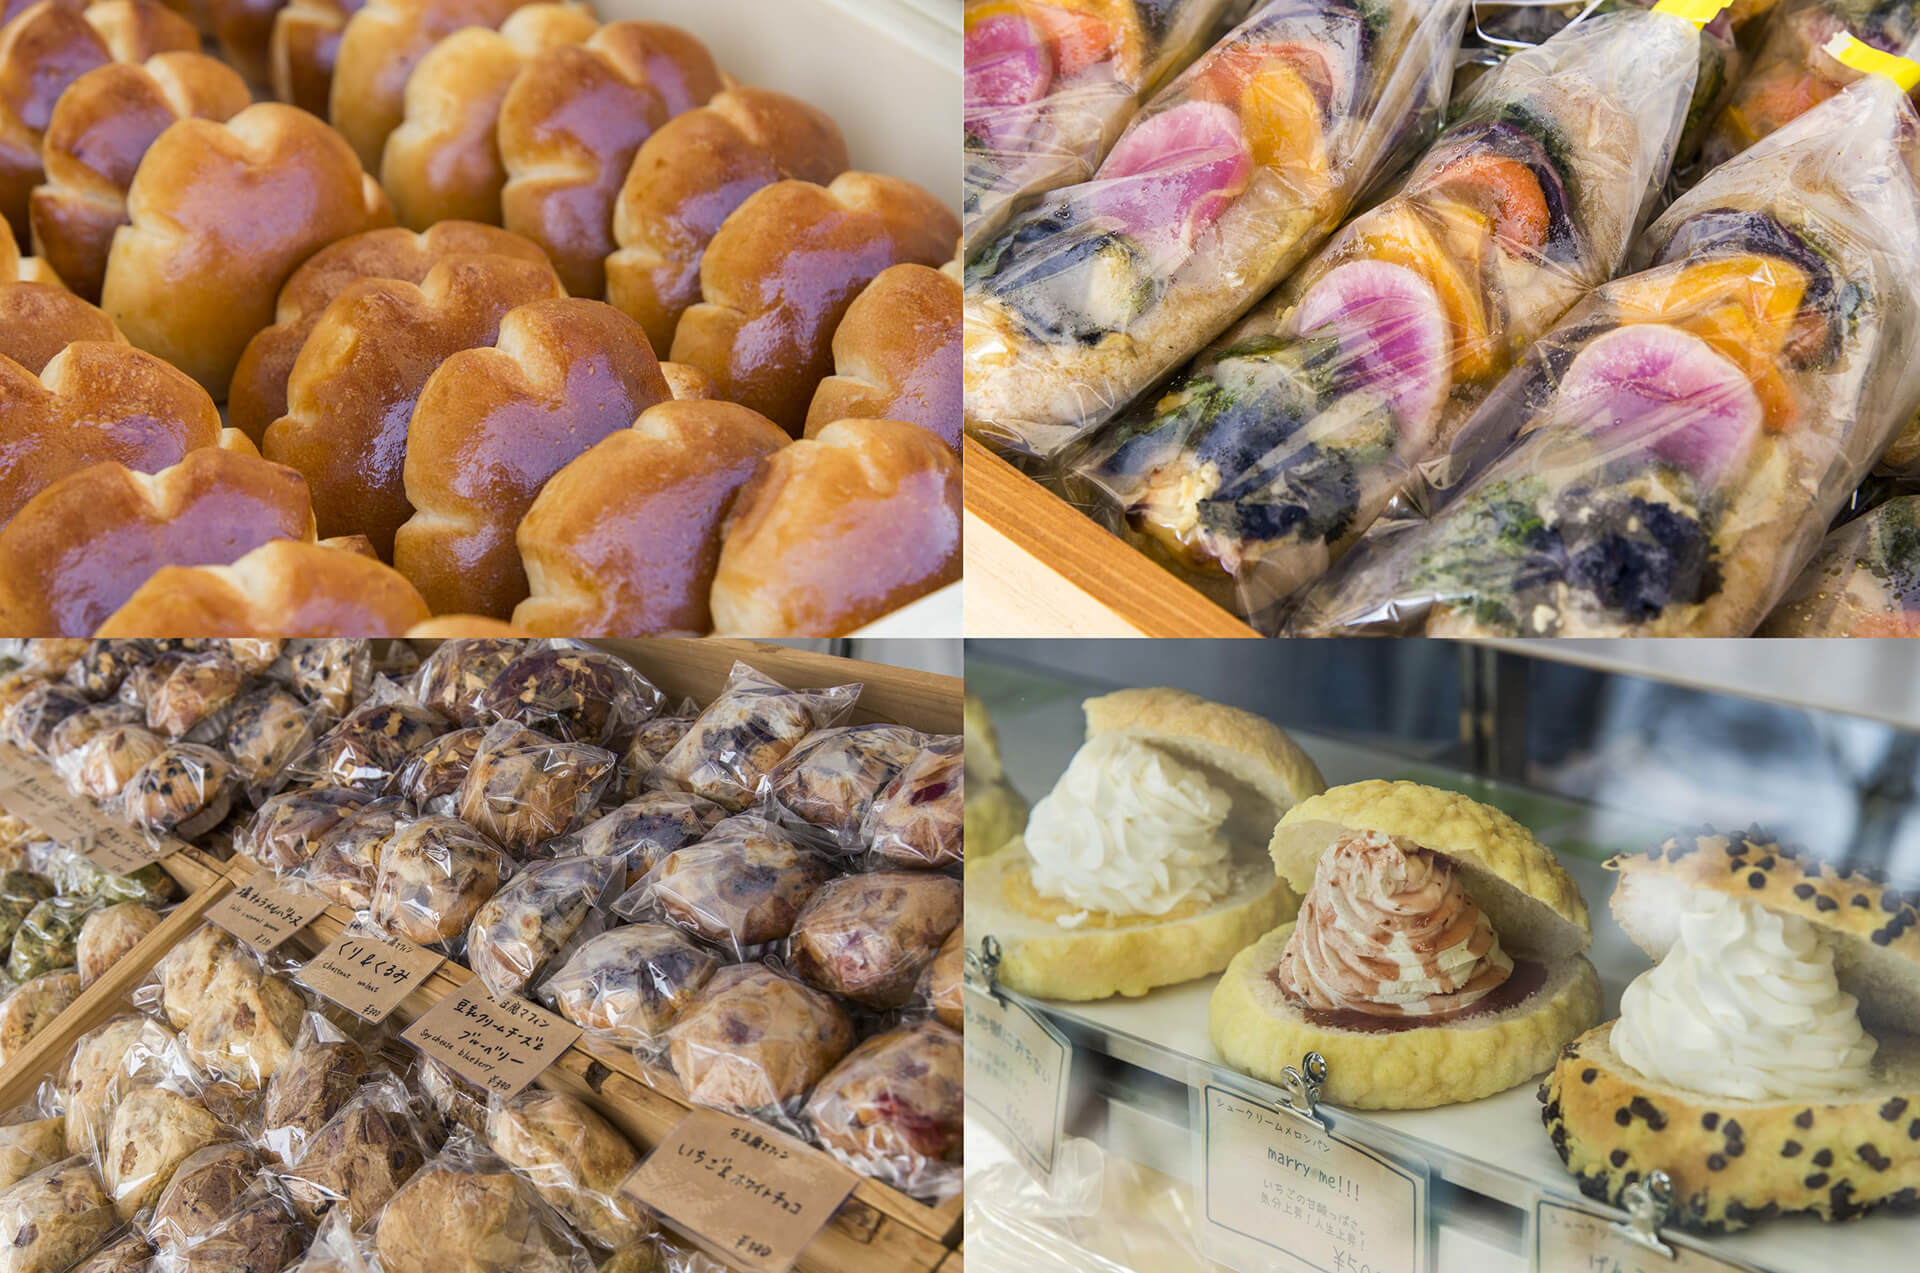 パンのフェス 2019 秋 in 横浜赤レンガで販売されるパンいろいろ